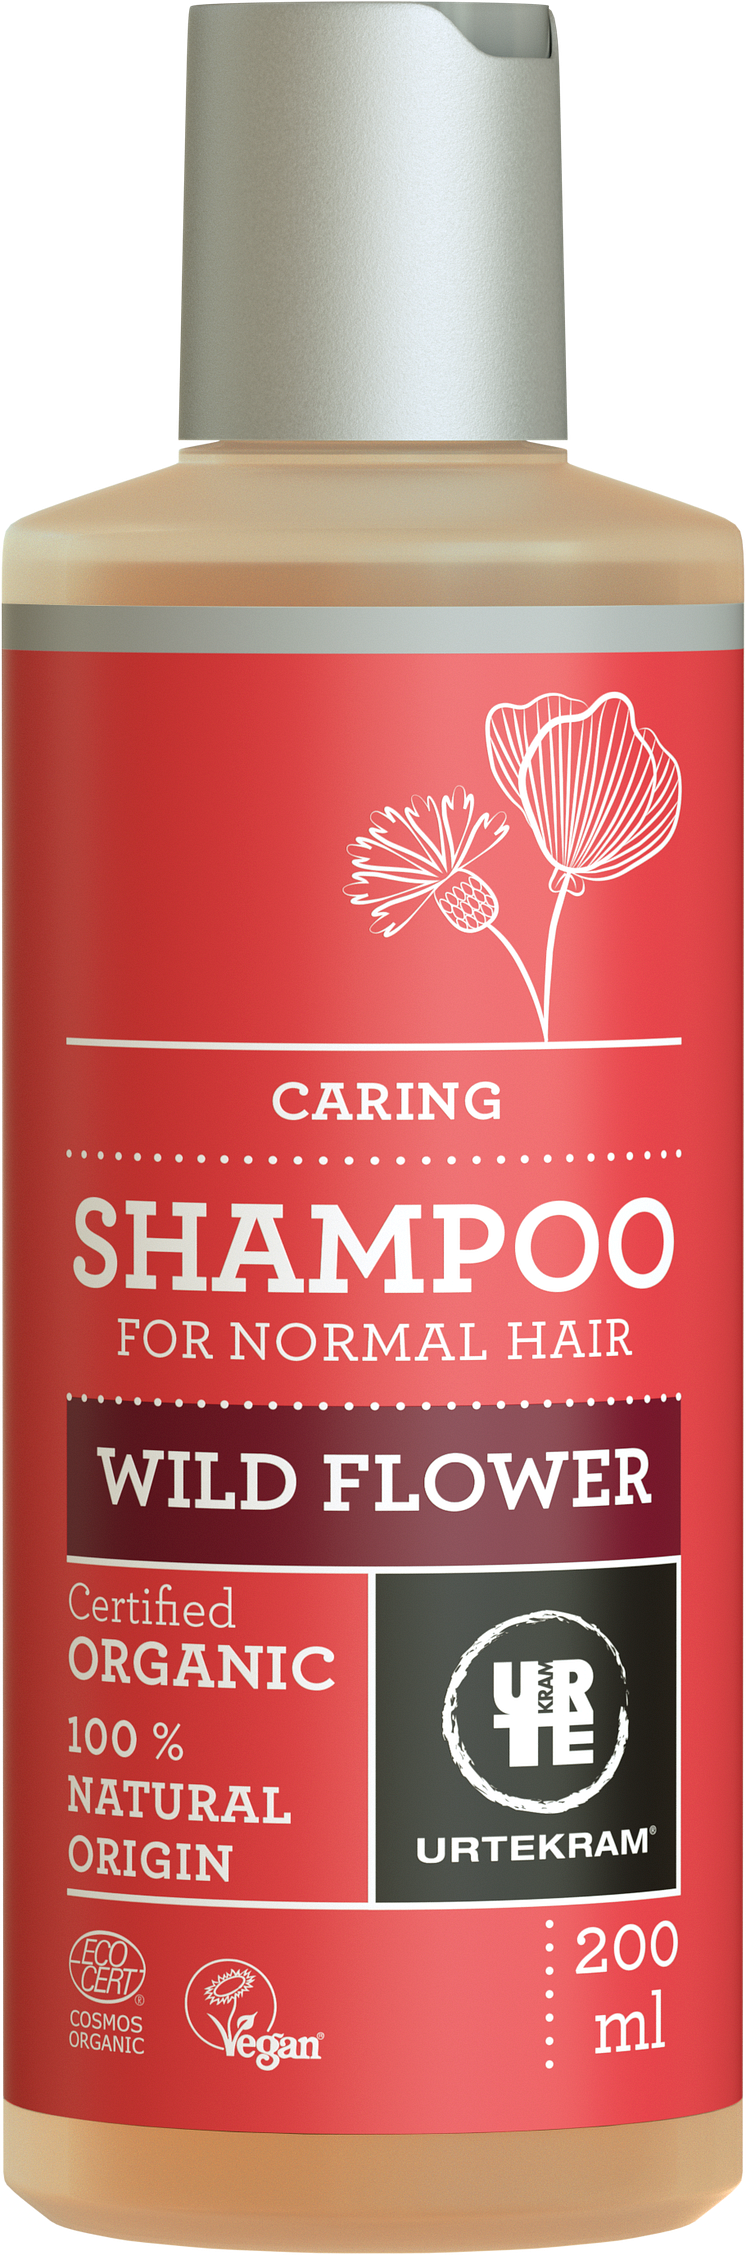 7001414_Wild Flower Shampoo 200ml